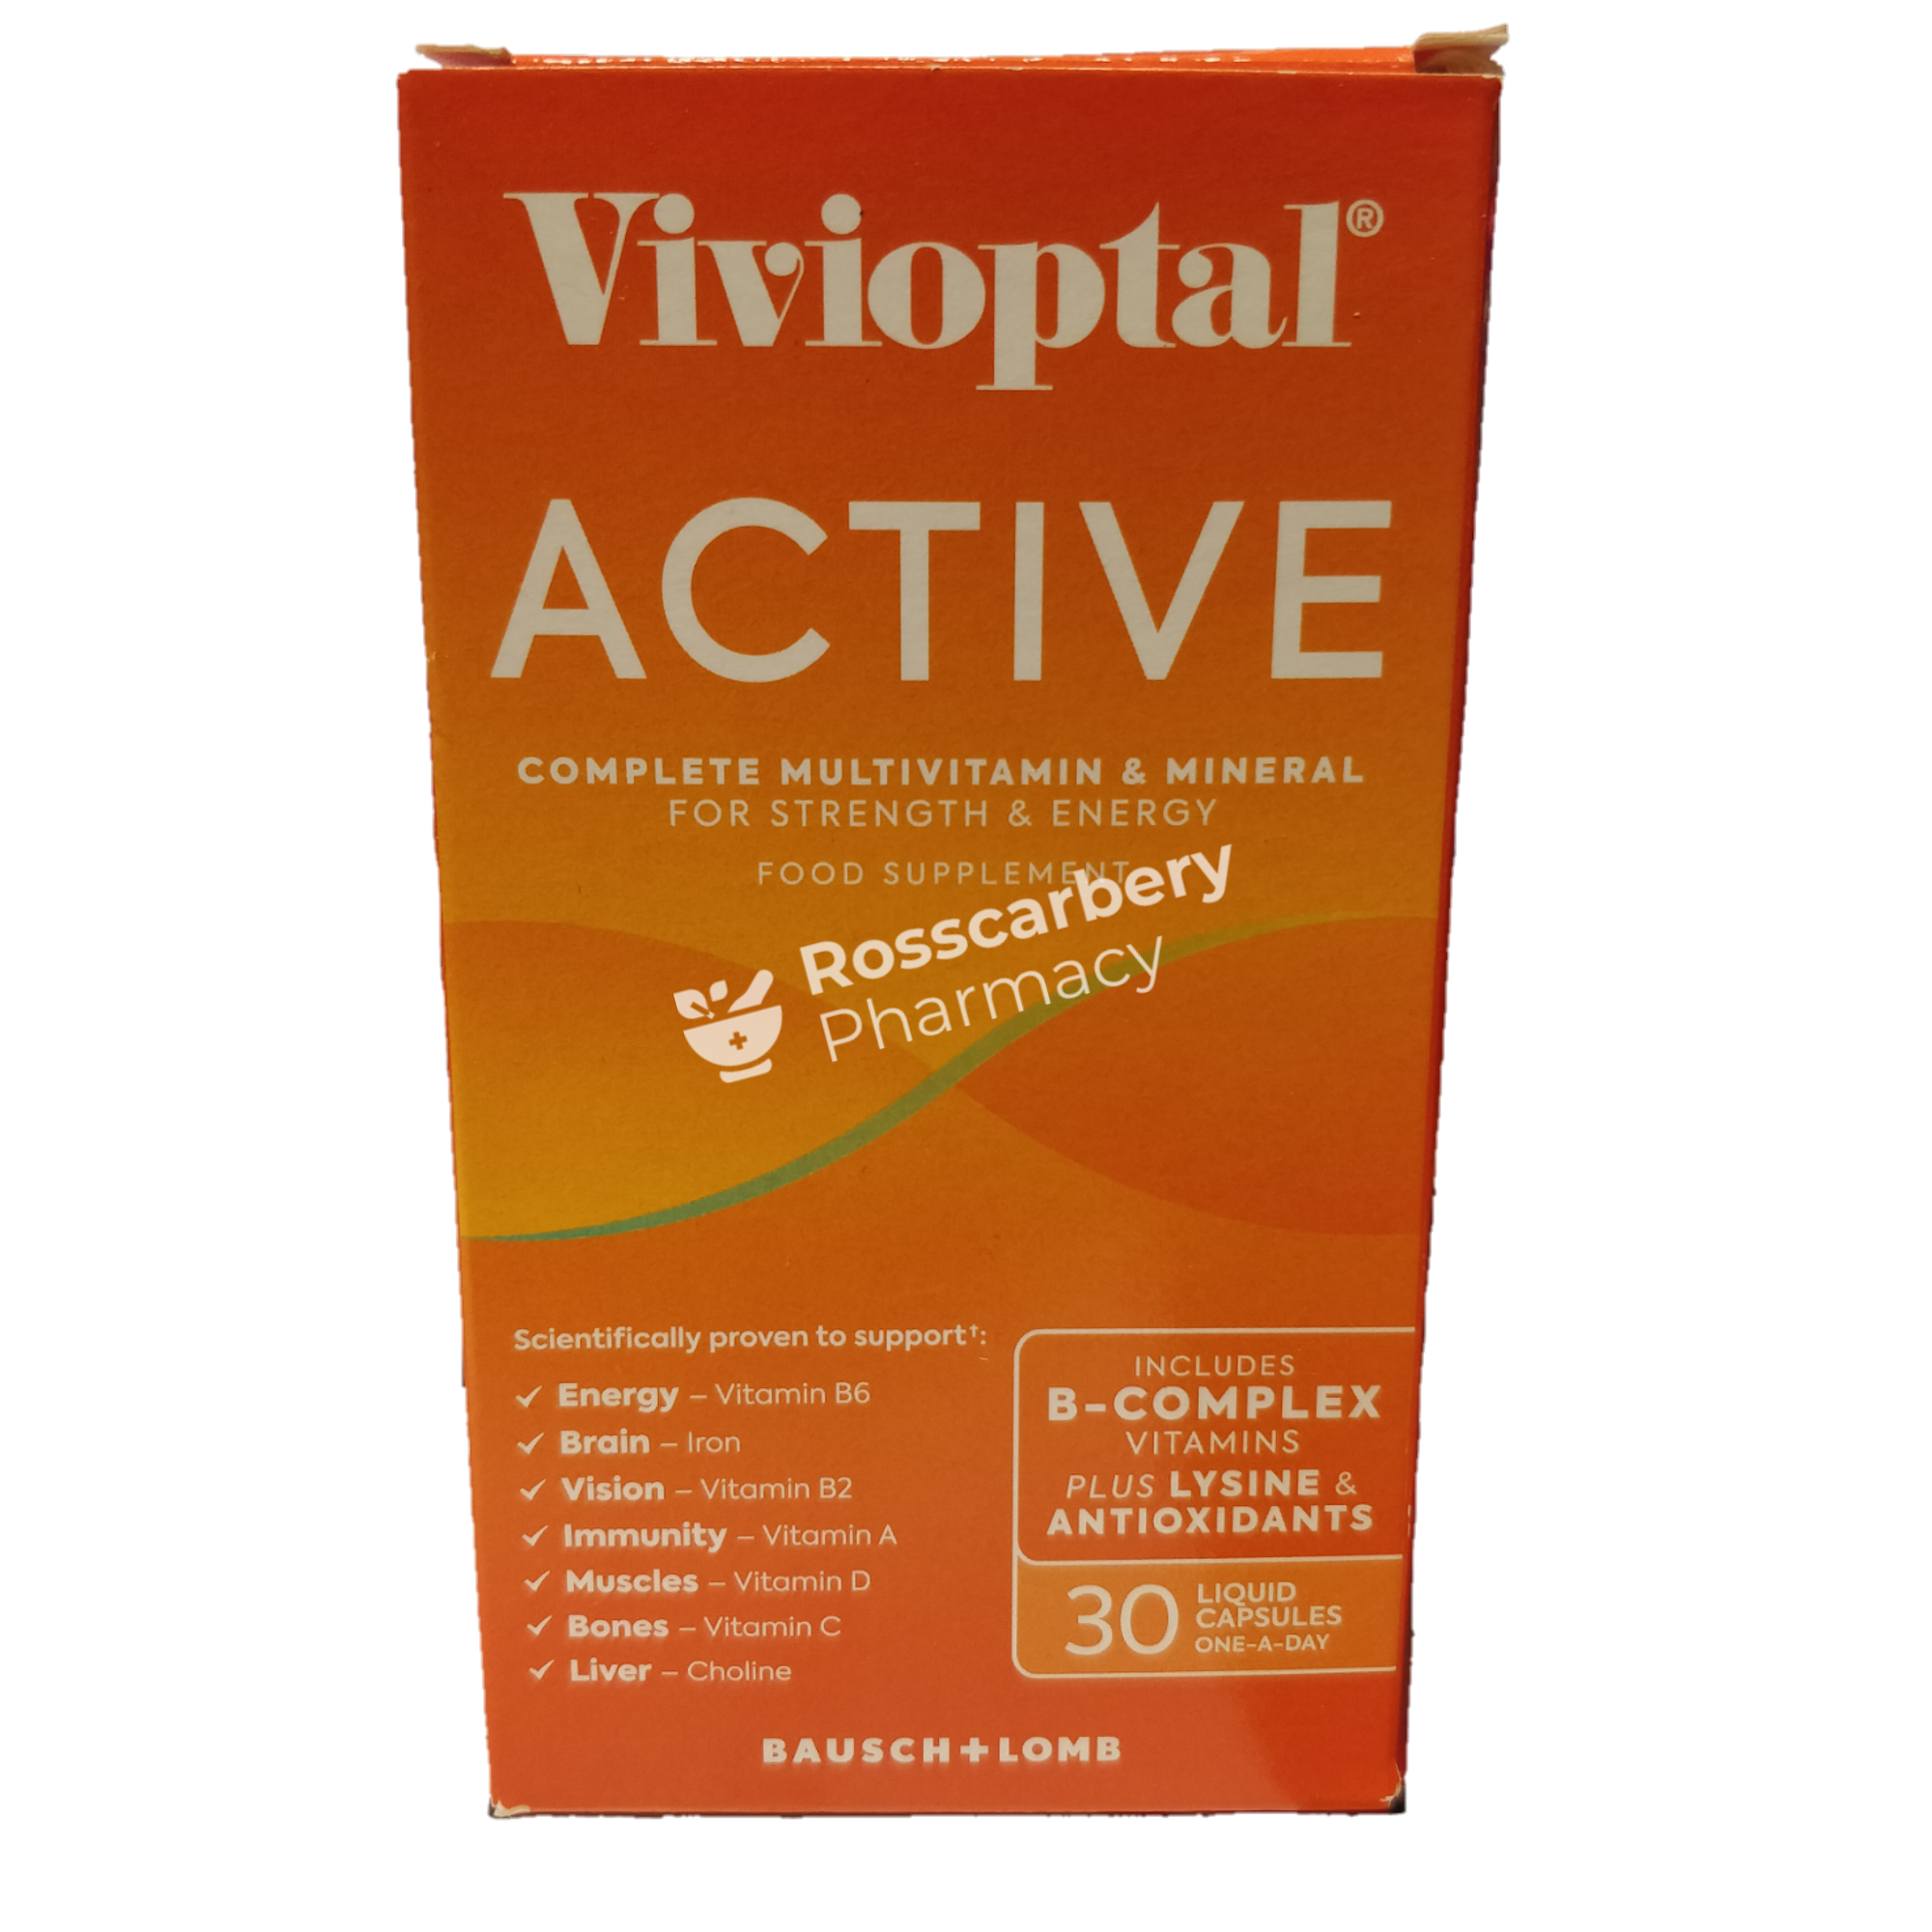 Vivioptal Capsules Energy & Wellbeing